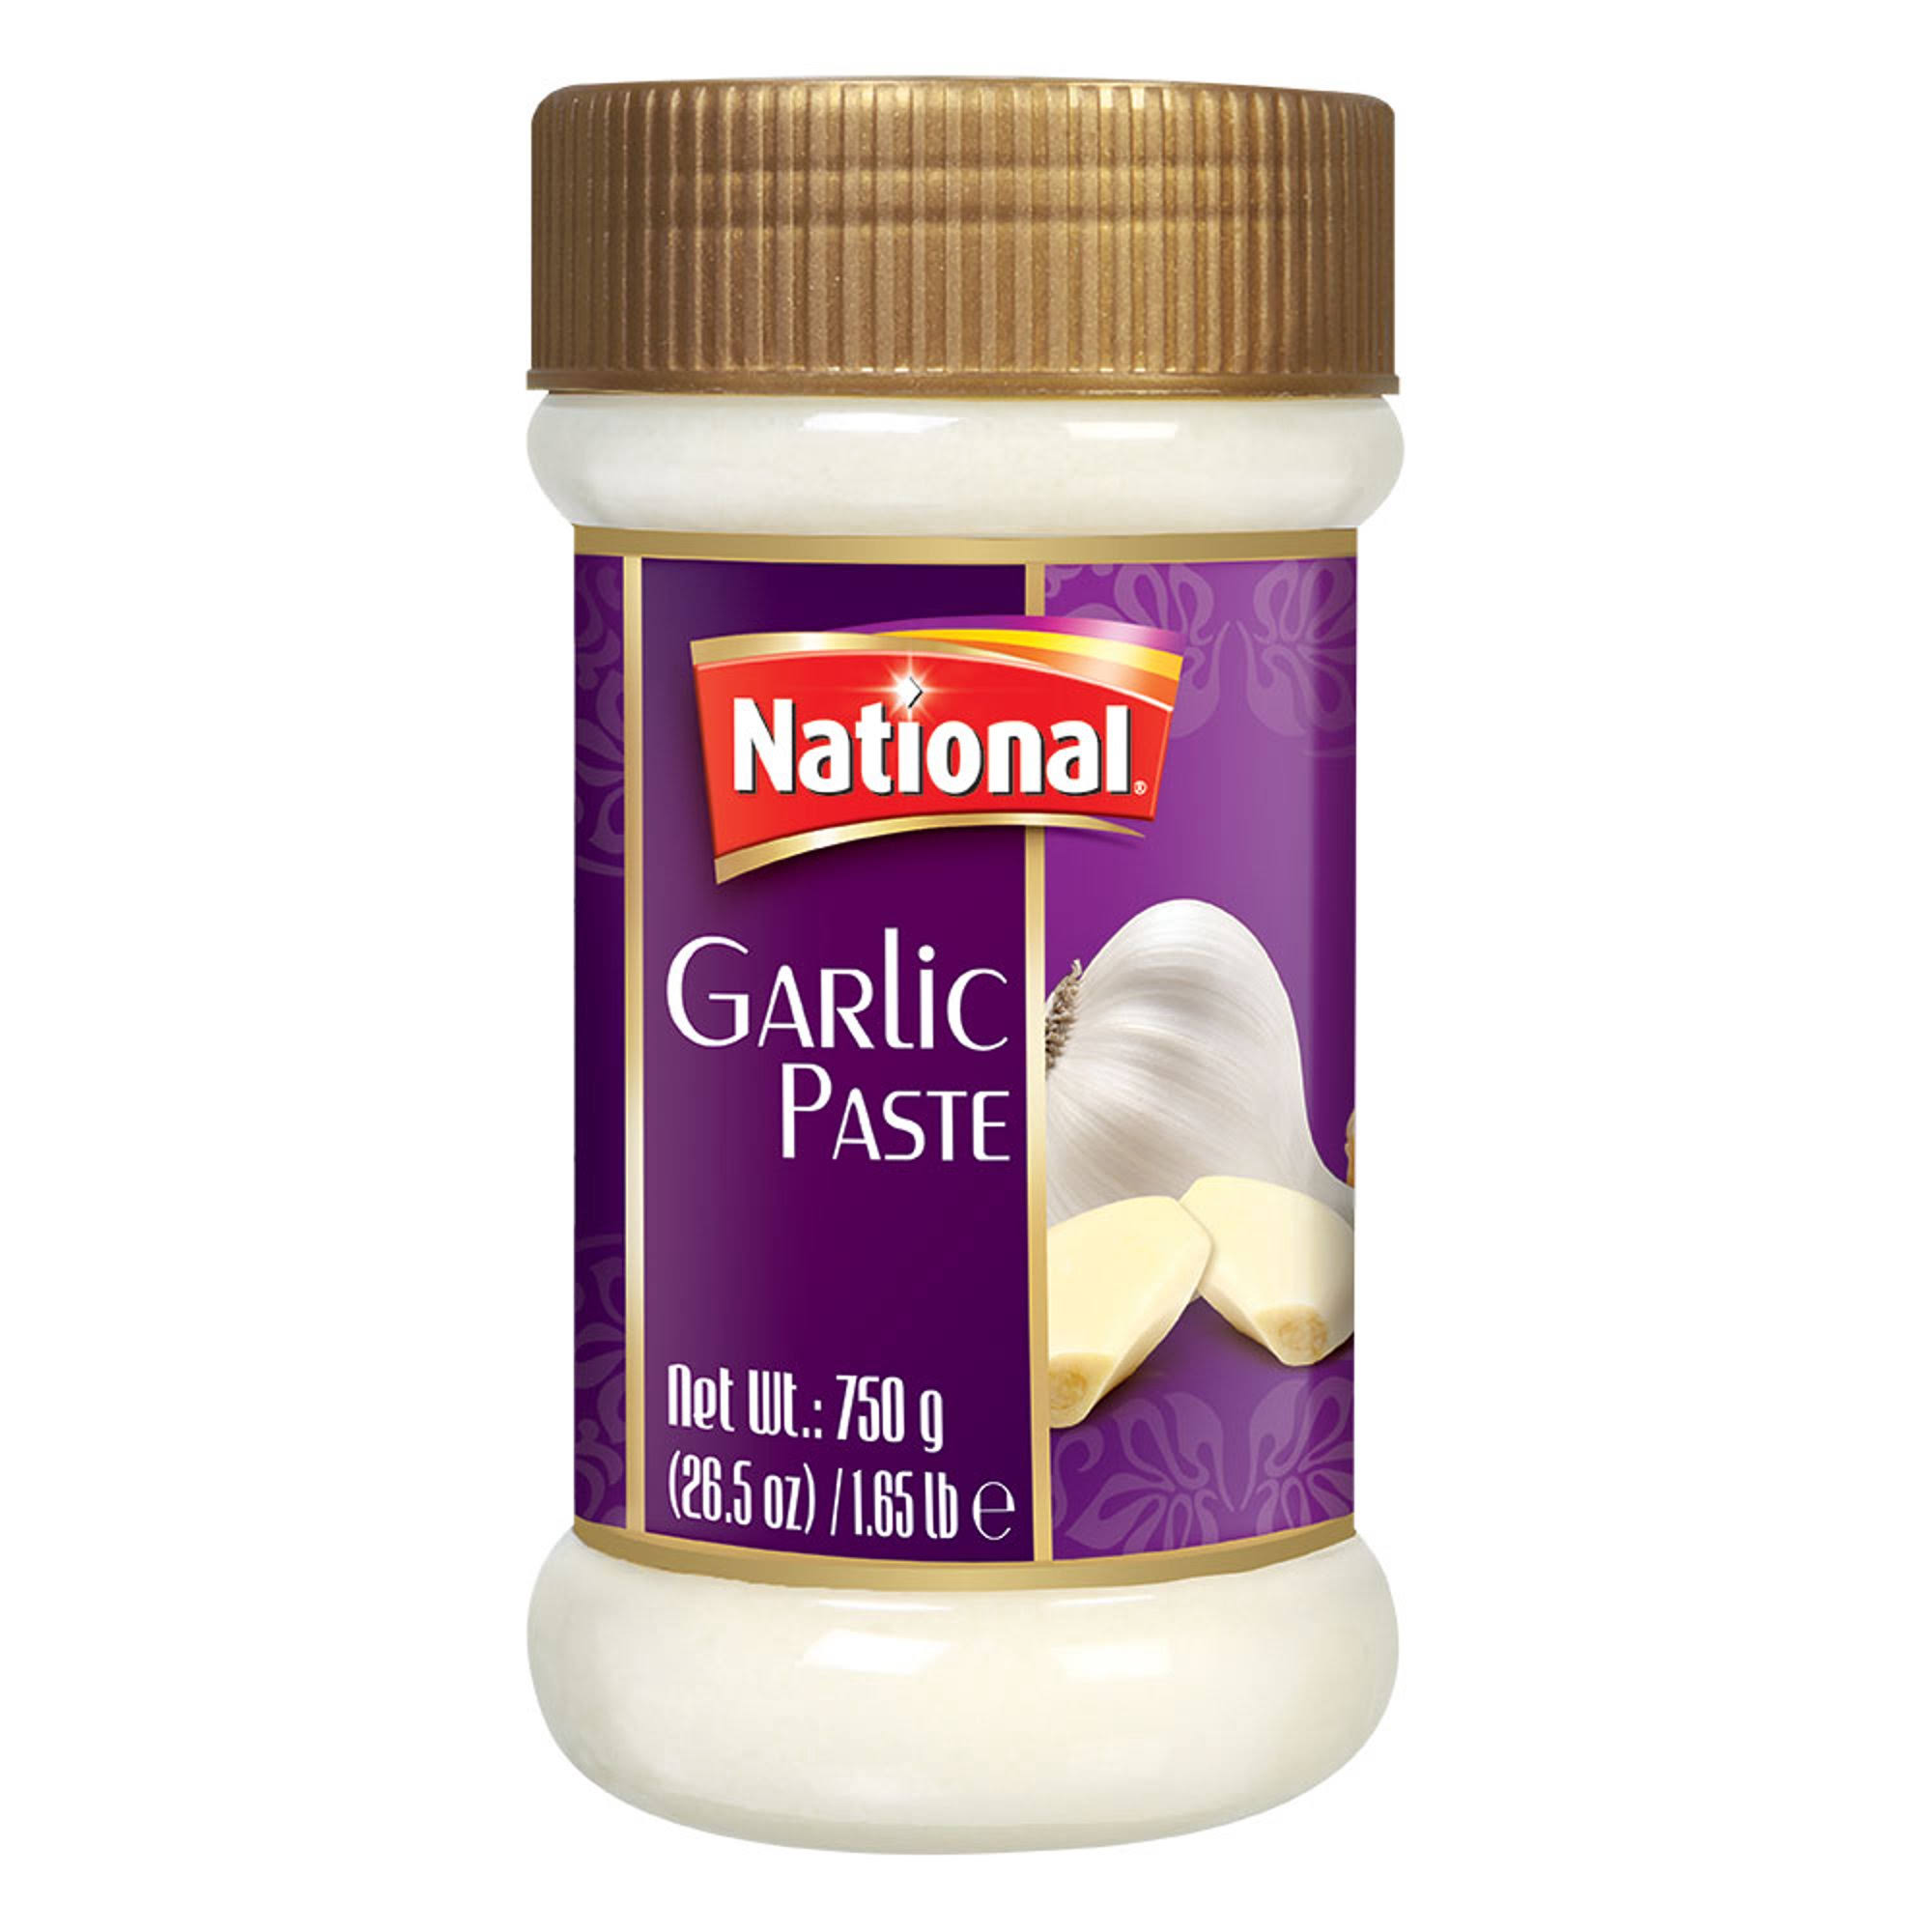 National Garlic Paste - 750g